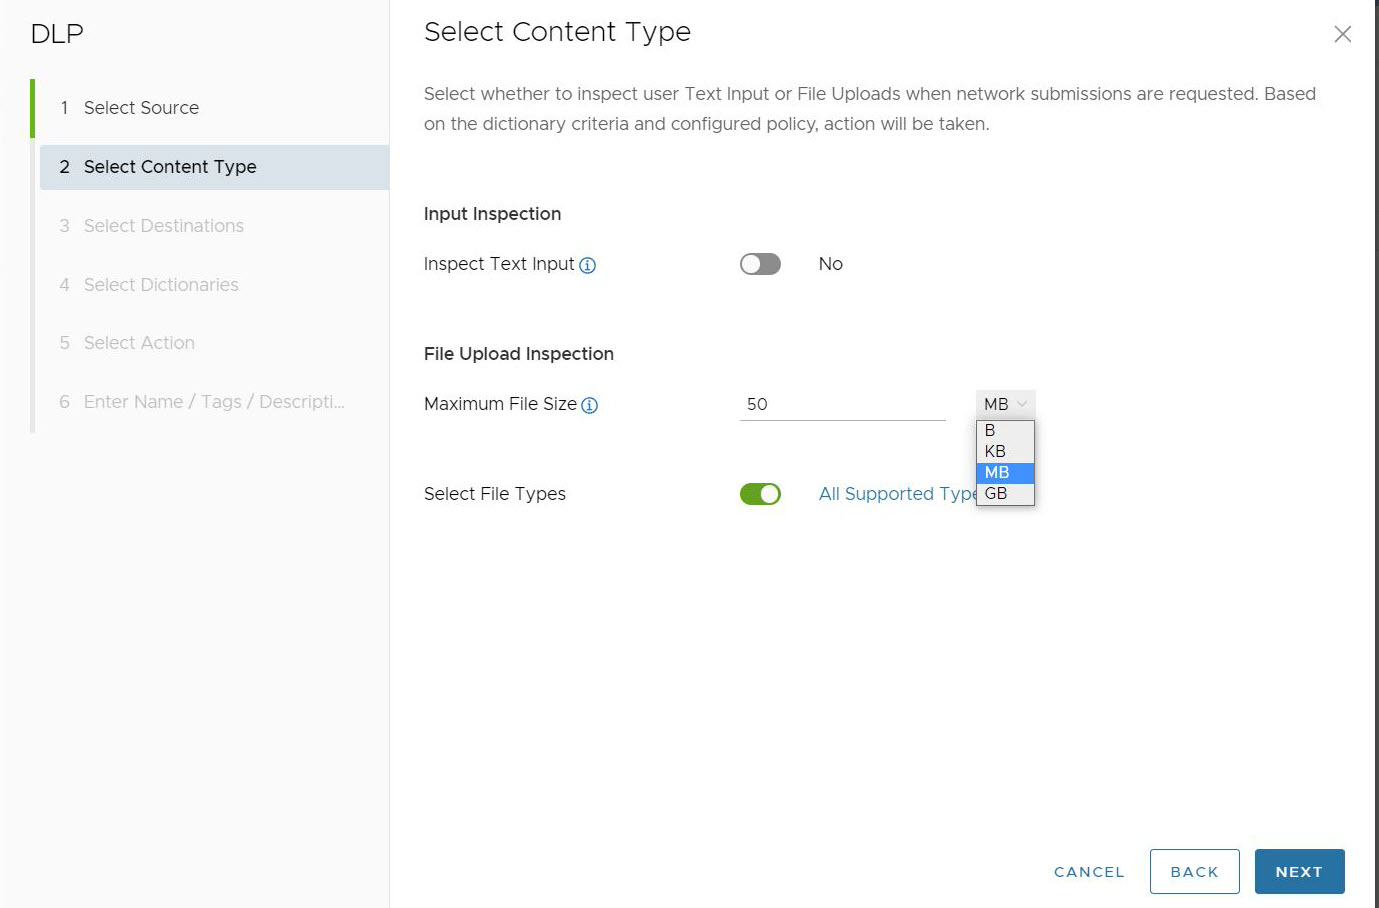 Výchozí obrazovka pro Vyberte typ obsahu (Select Content Type), zobrazující Zkontrolujte zadaný text (Inspect Text Input), Kontrola nahrání souboru (File Upload Inspection) s Maximální velikostí souboru (Maximum File Size) a Vyberte typy souborů (Select File Types).